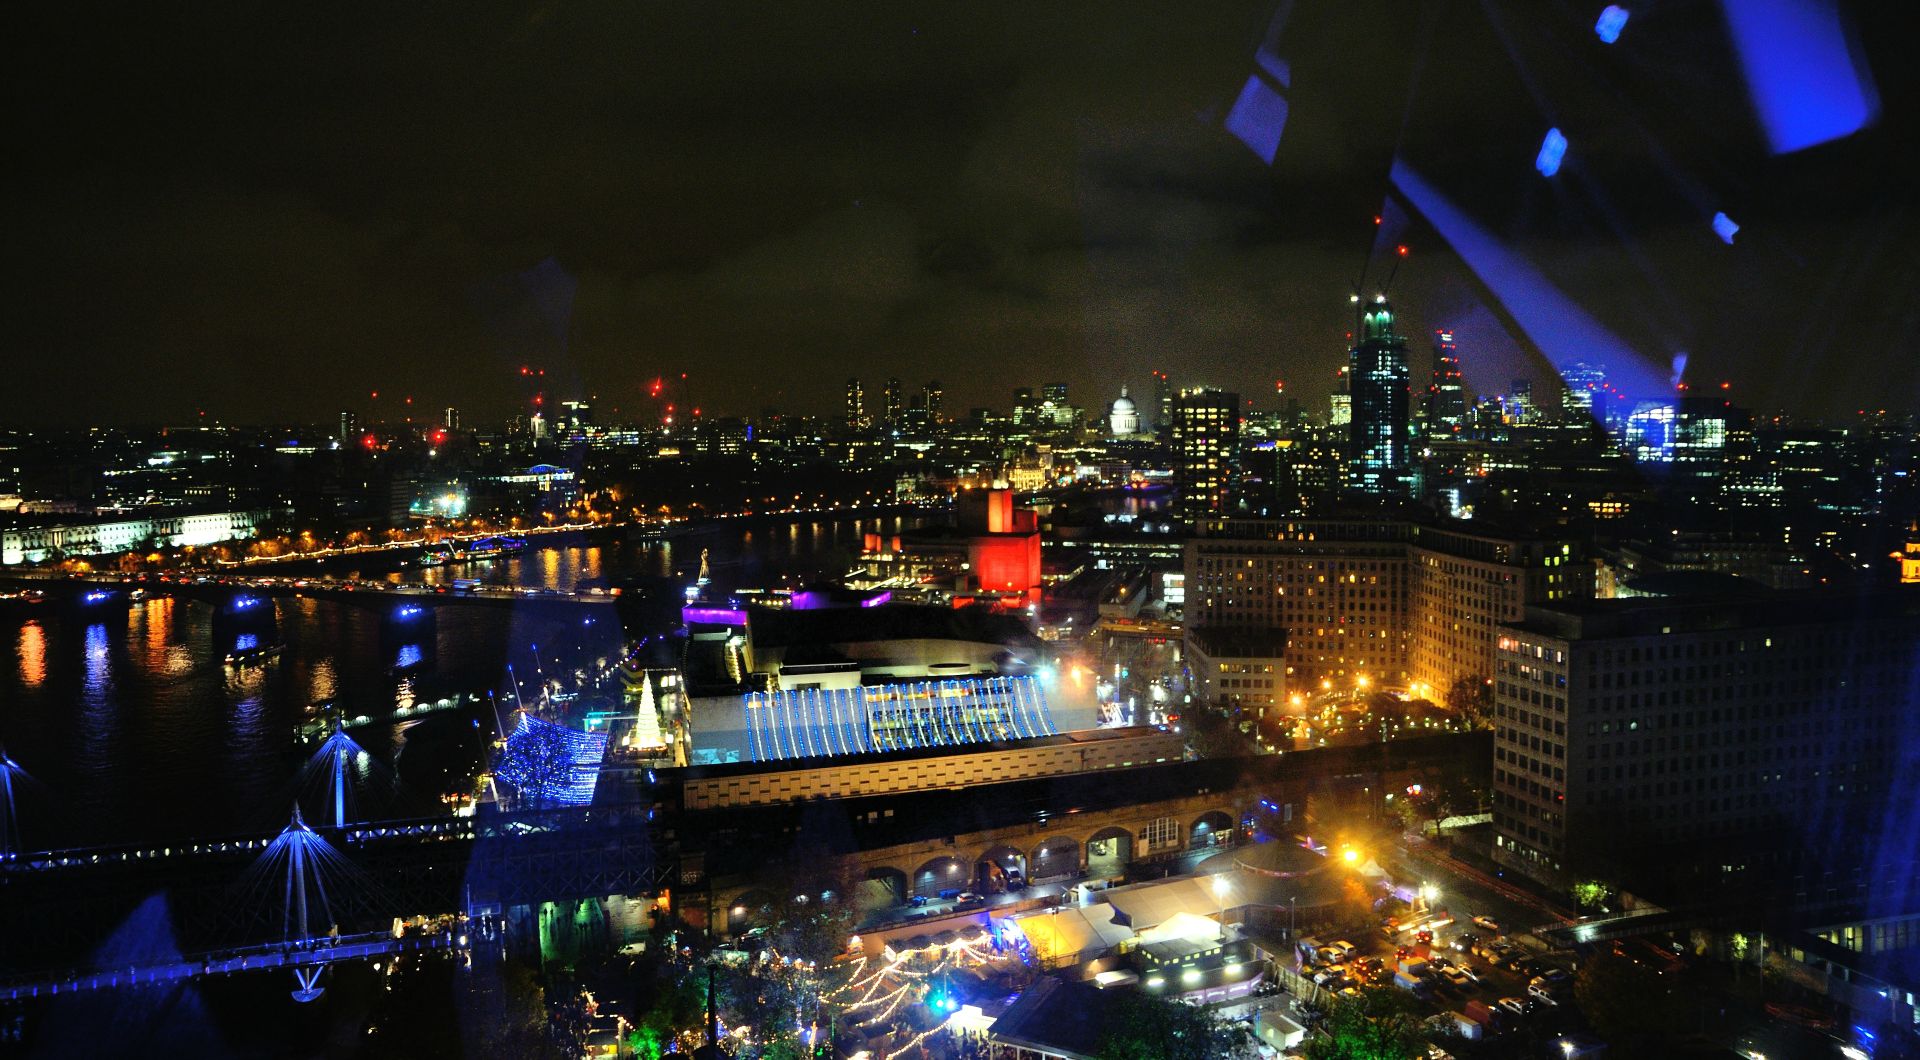 Es geht los. Das London Eye, auch bekannt unter der Bezeichnung Millennium Wheel, ist mit einer Höhe von 135 Metern das derzeit höchste Riesenrad Europas.